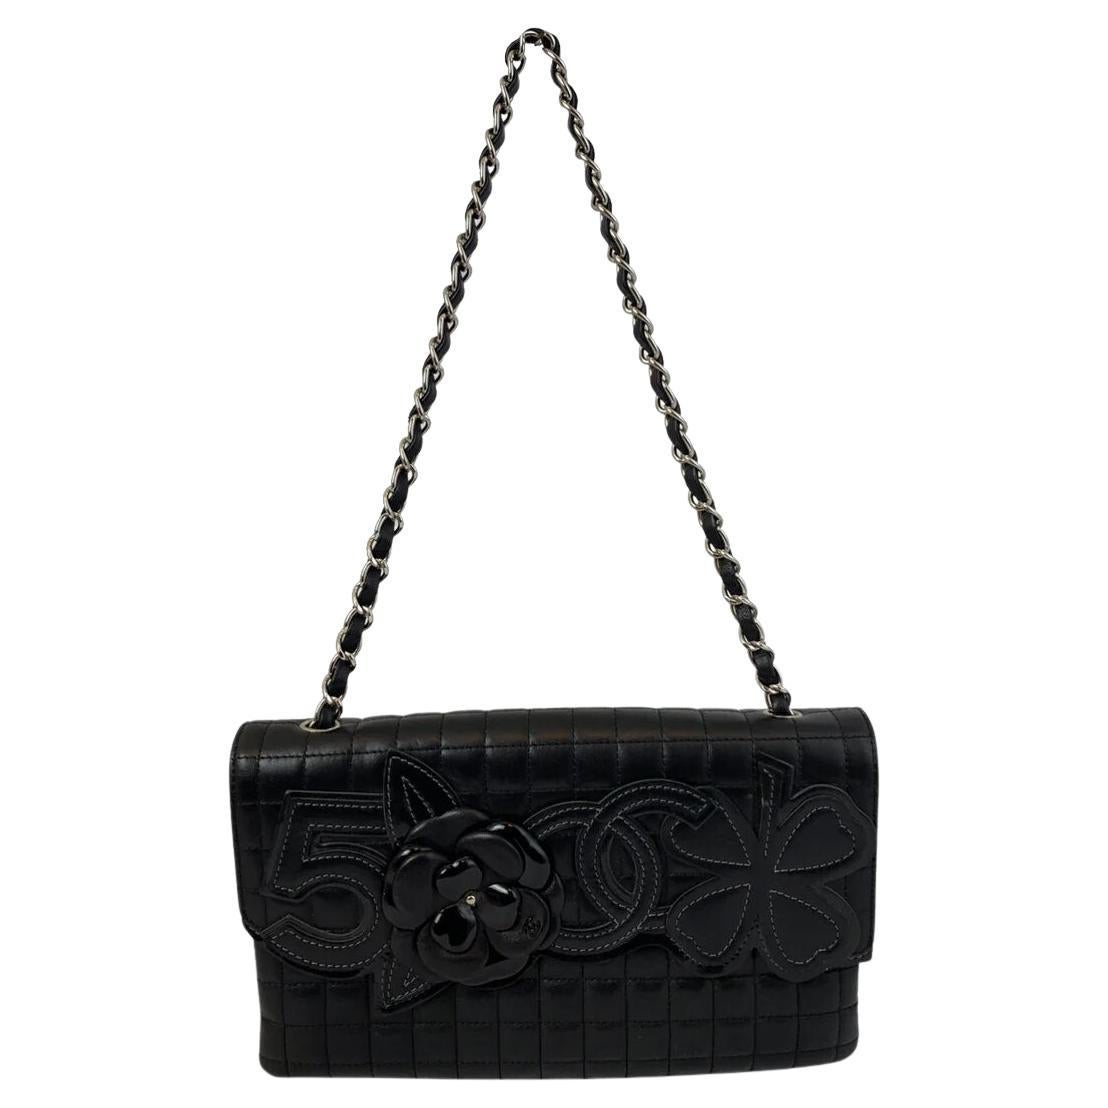 Chanel No. 5 Camellia Flap Bag